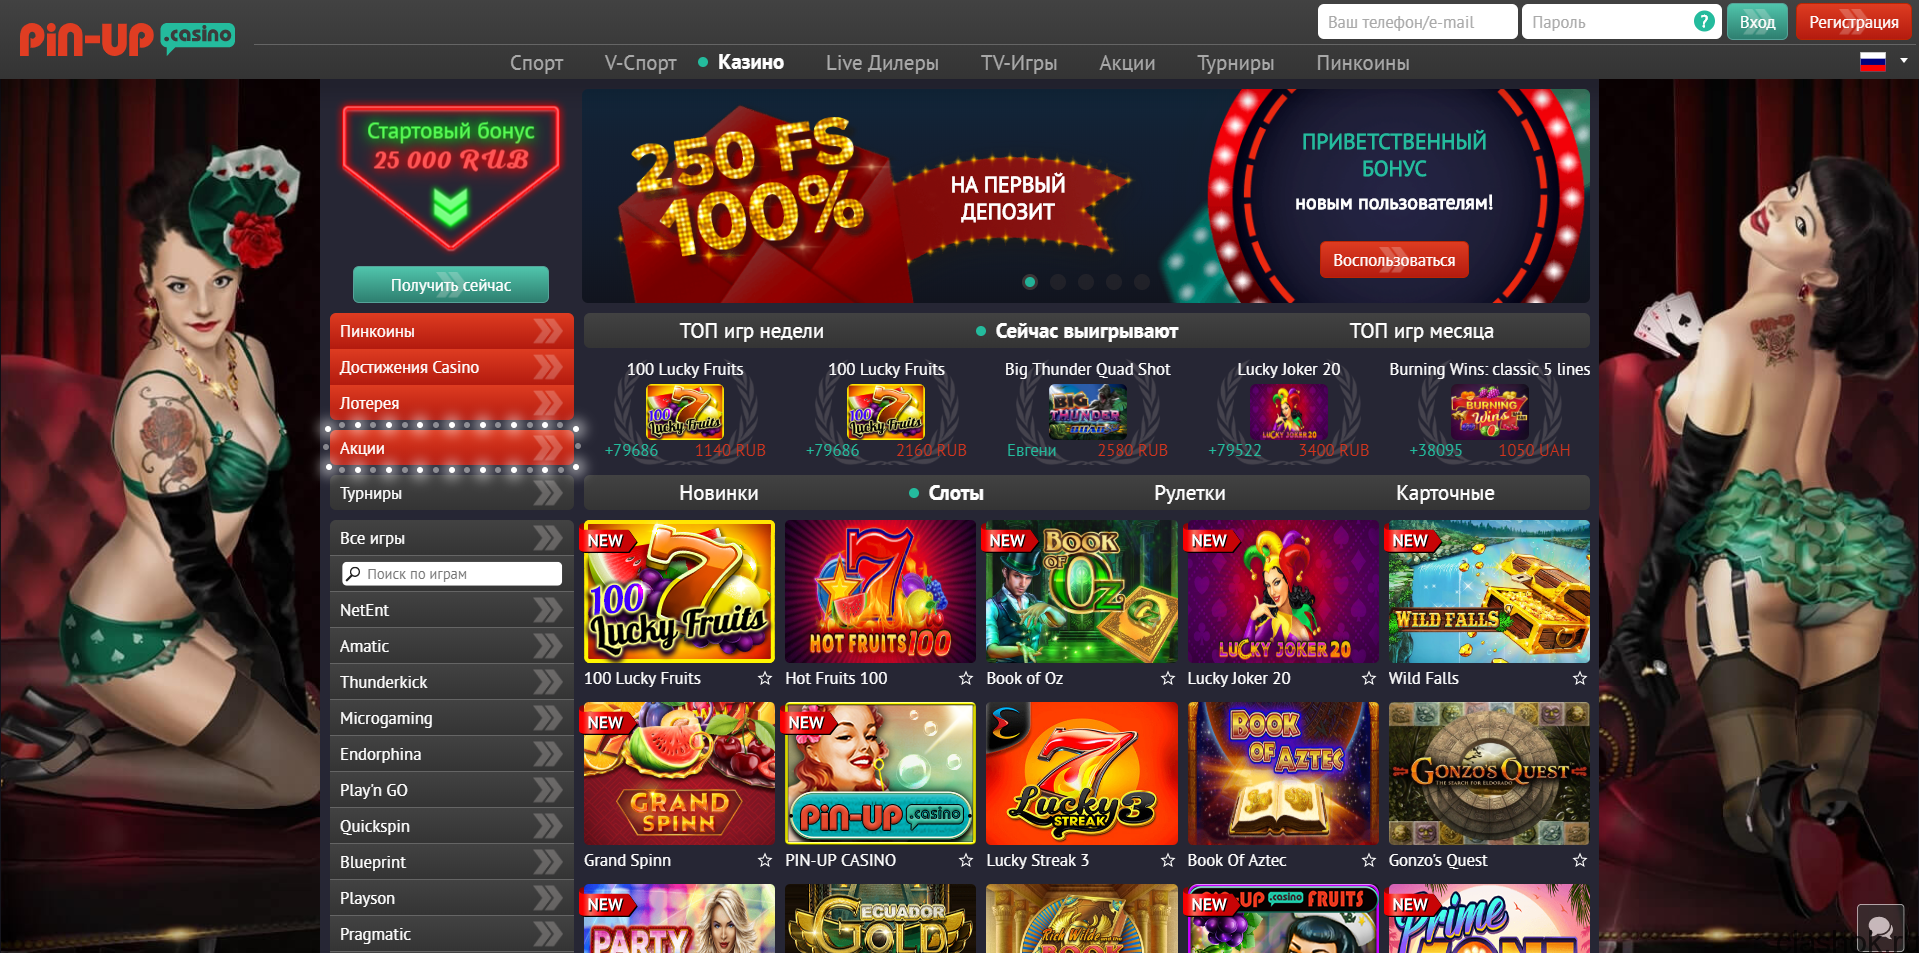 Pin up casino официальный сайт 2021 скачать онлайн казино goldfishka casino